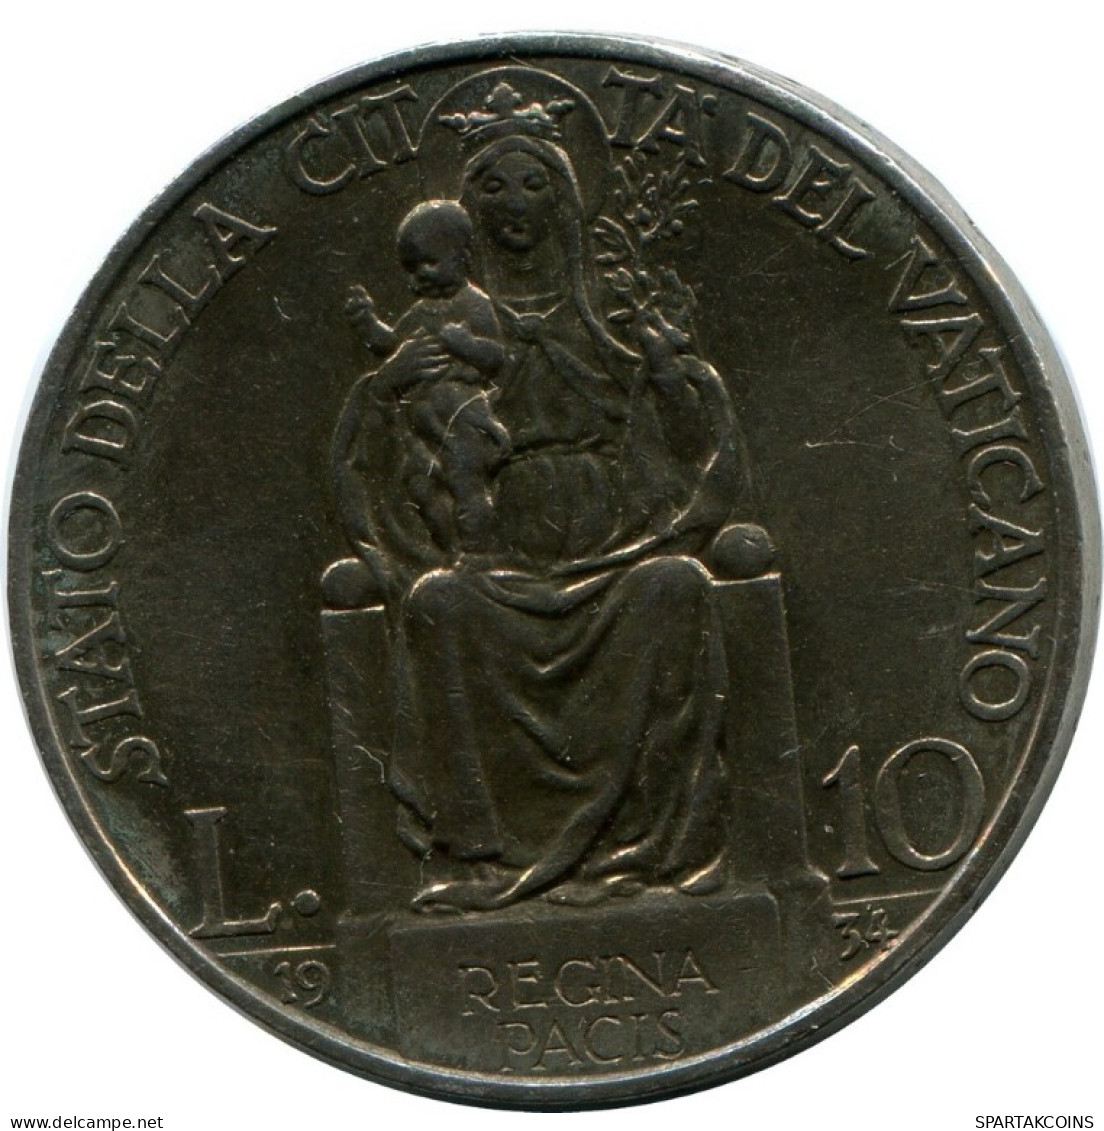 10 LIRE 1934 VATIKAN VATICAN Münze Pius XI (1922-1939) SILBER #AH306.16.D.A - Vaticaanstad